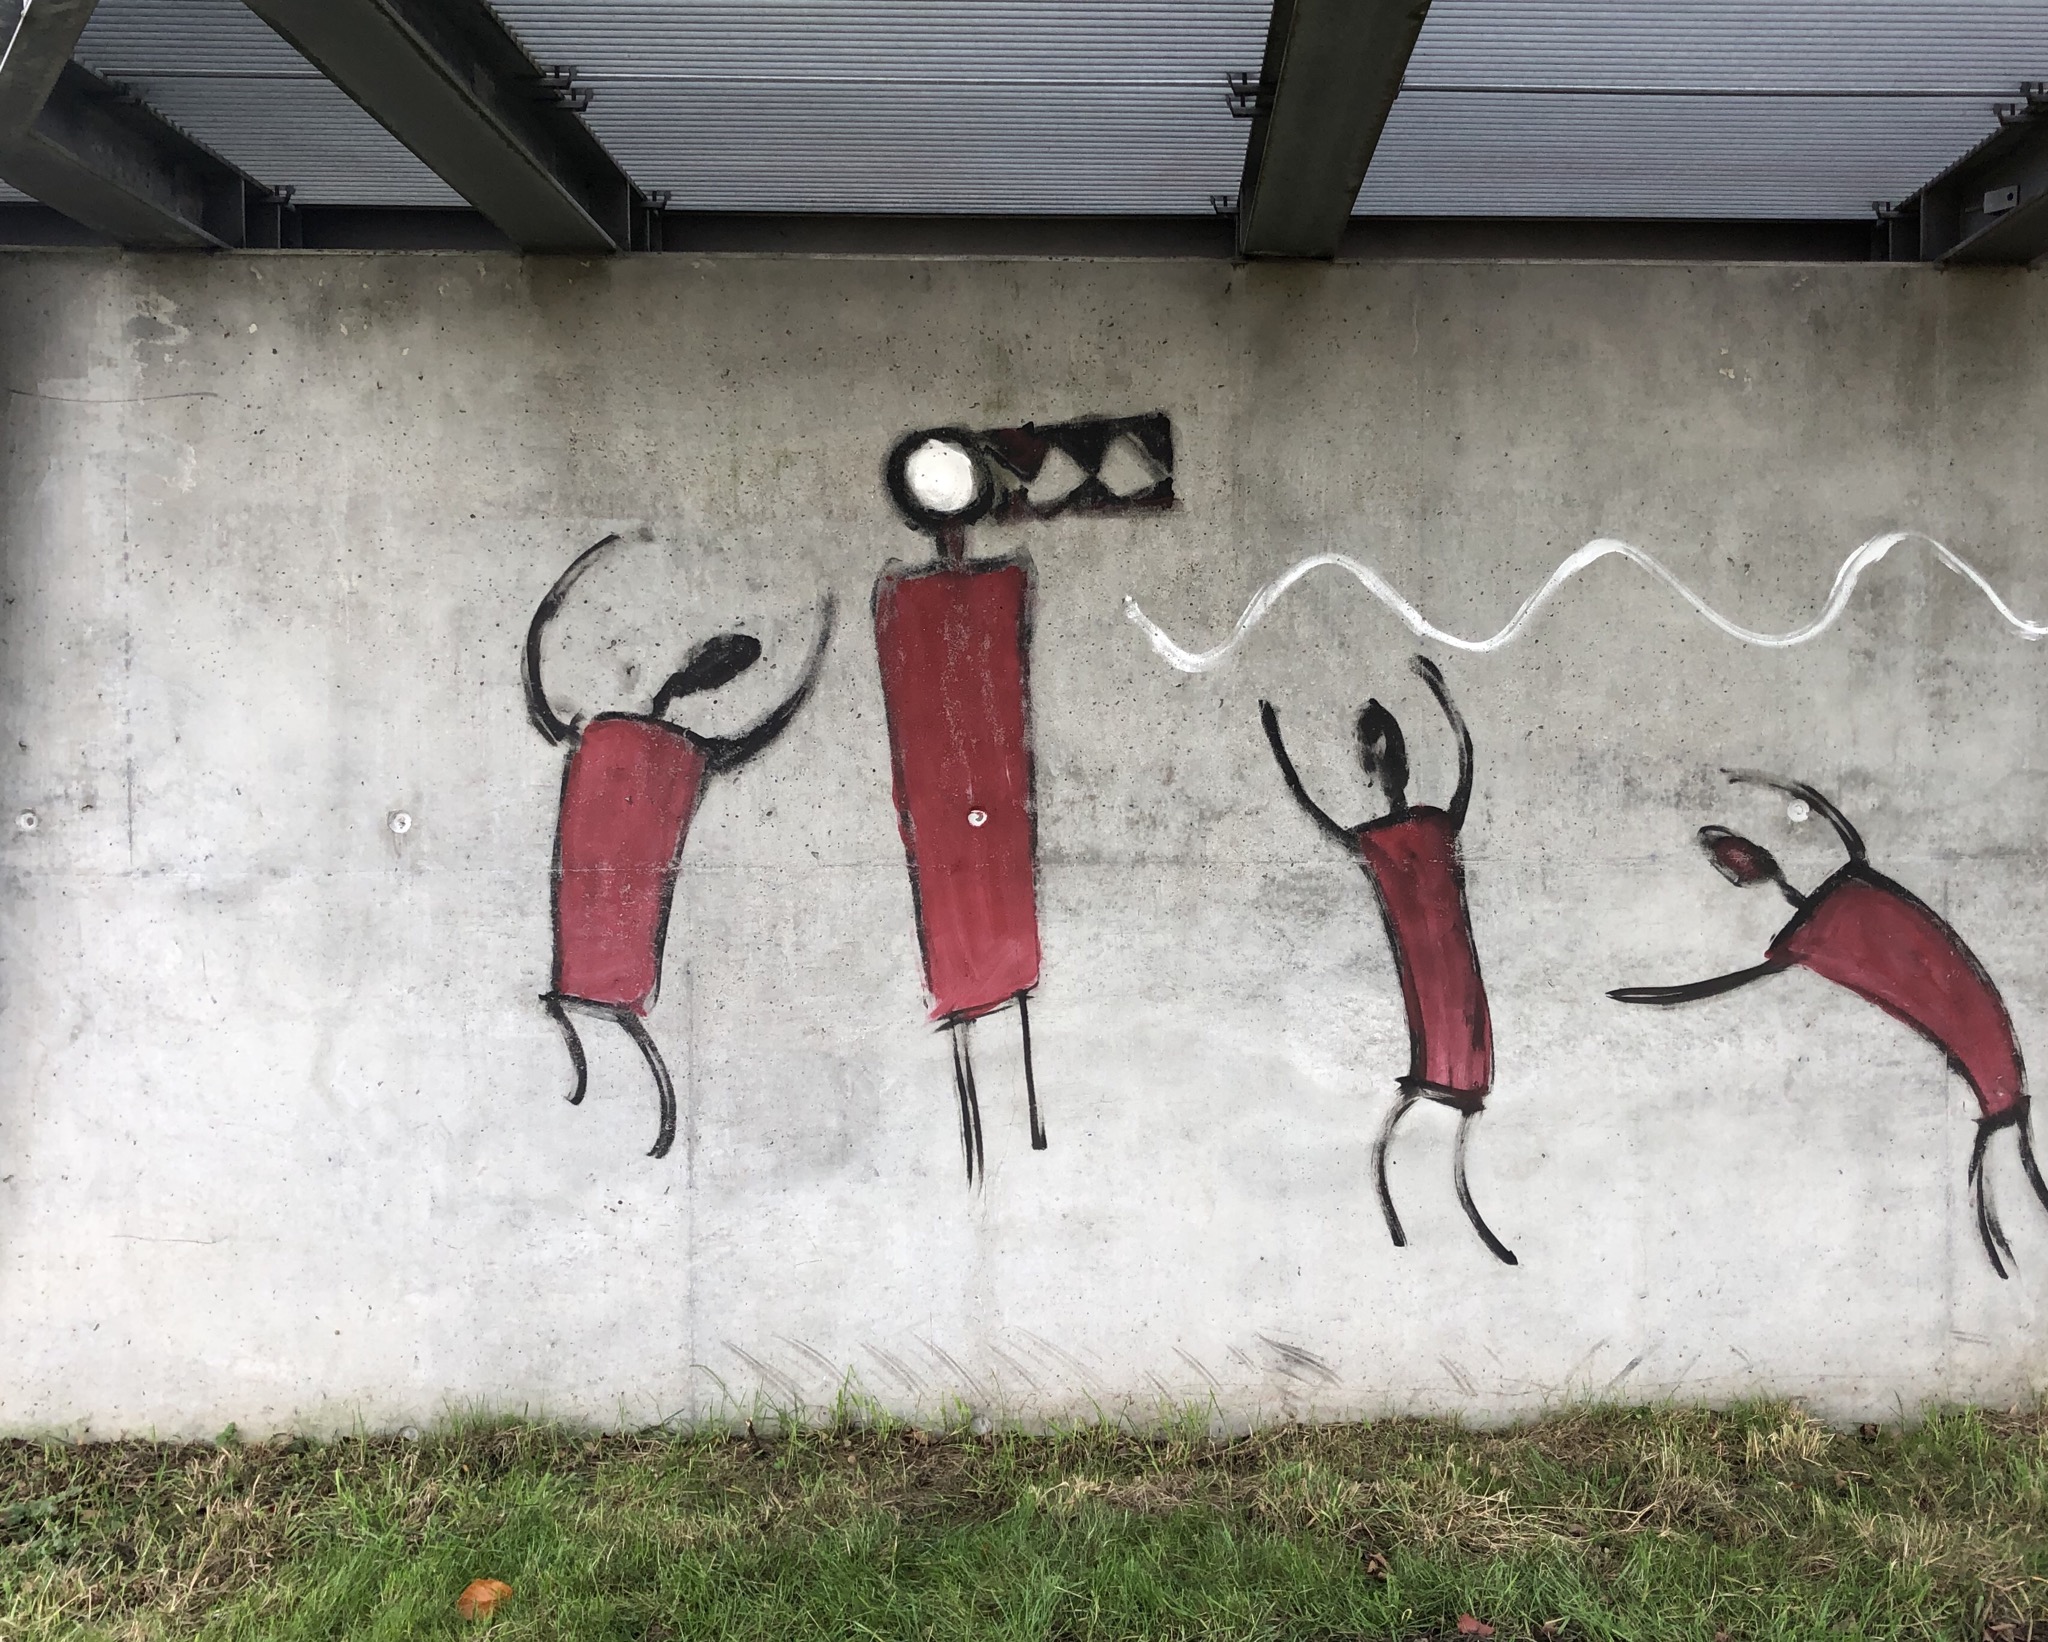 Graffiti 4546 Tribesmen rising à Kiel Germany